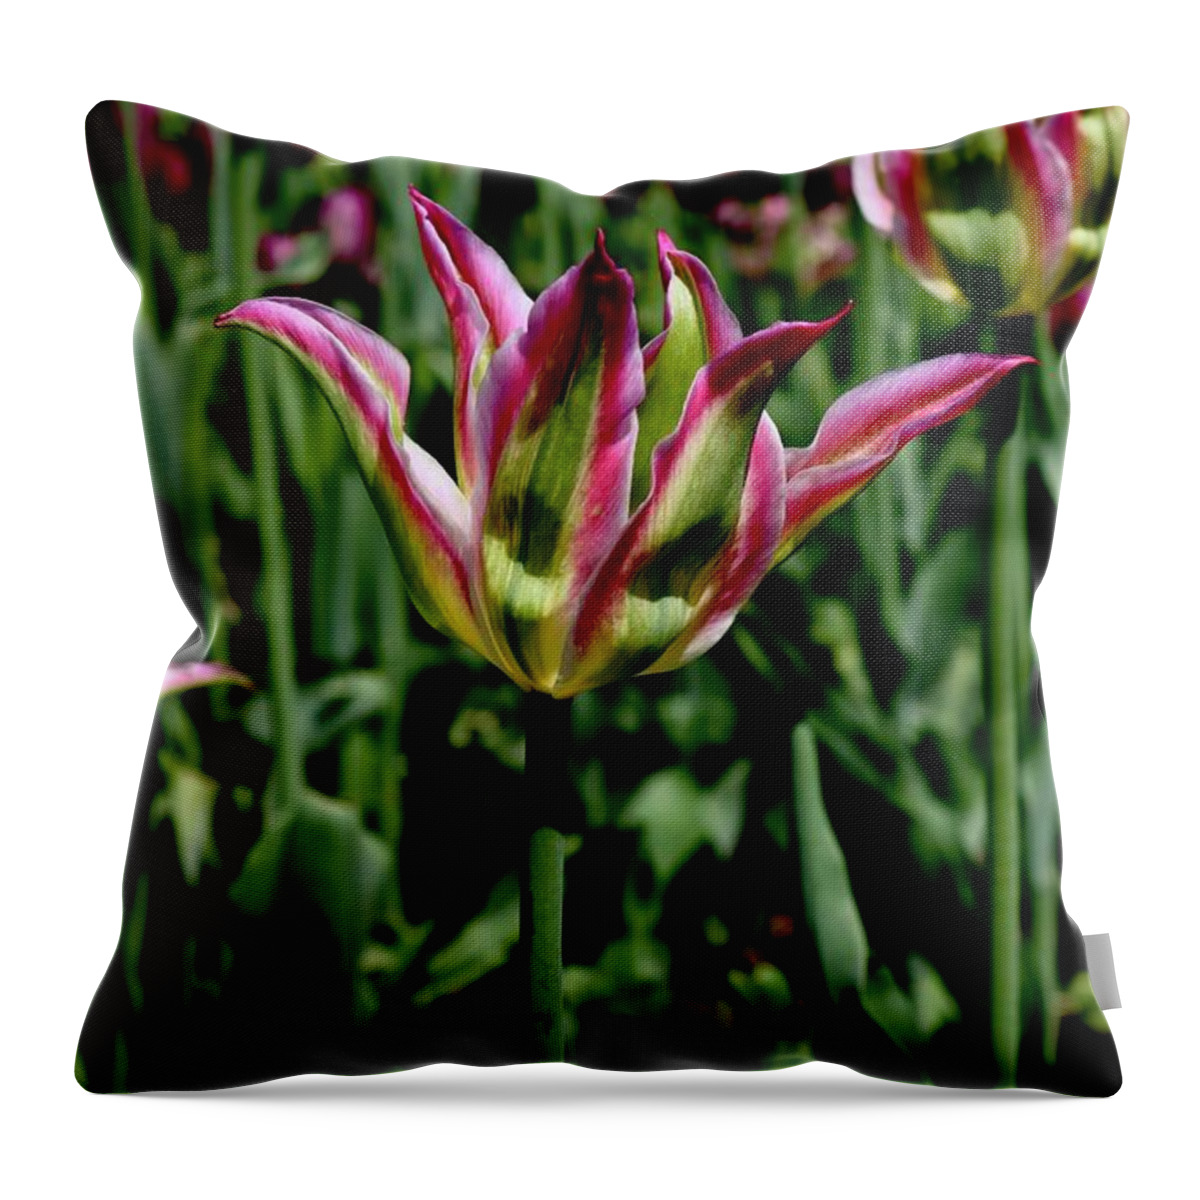 Tulip Throw Pillow featuring the photograph Tulip #2 by Sarah Lilja